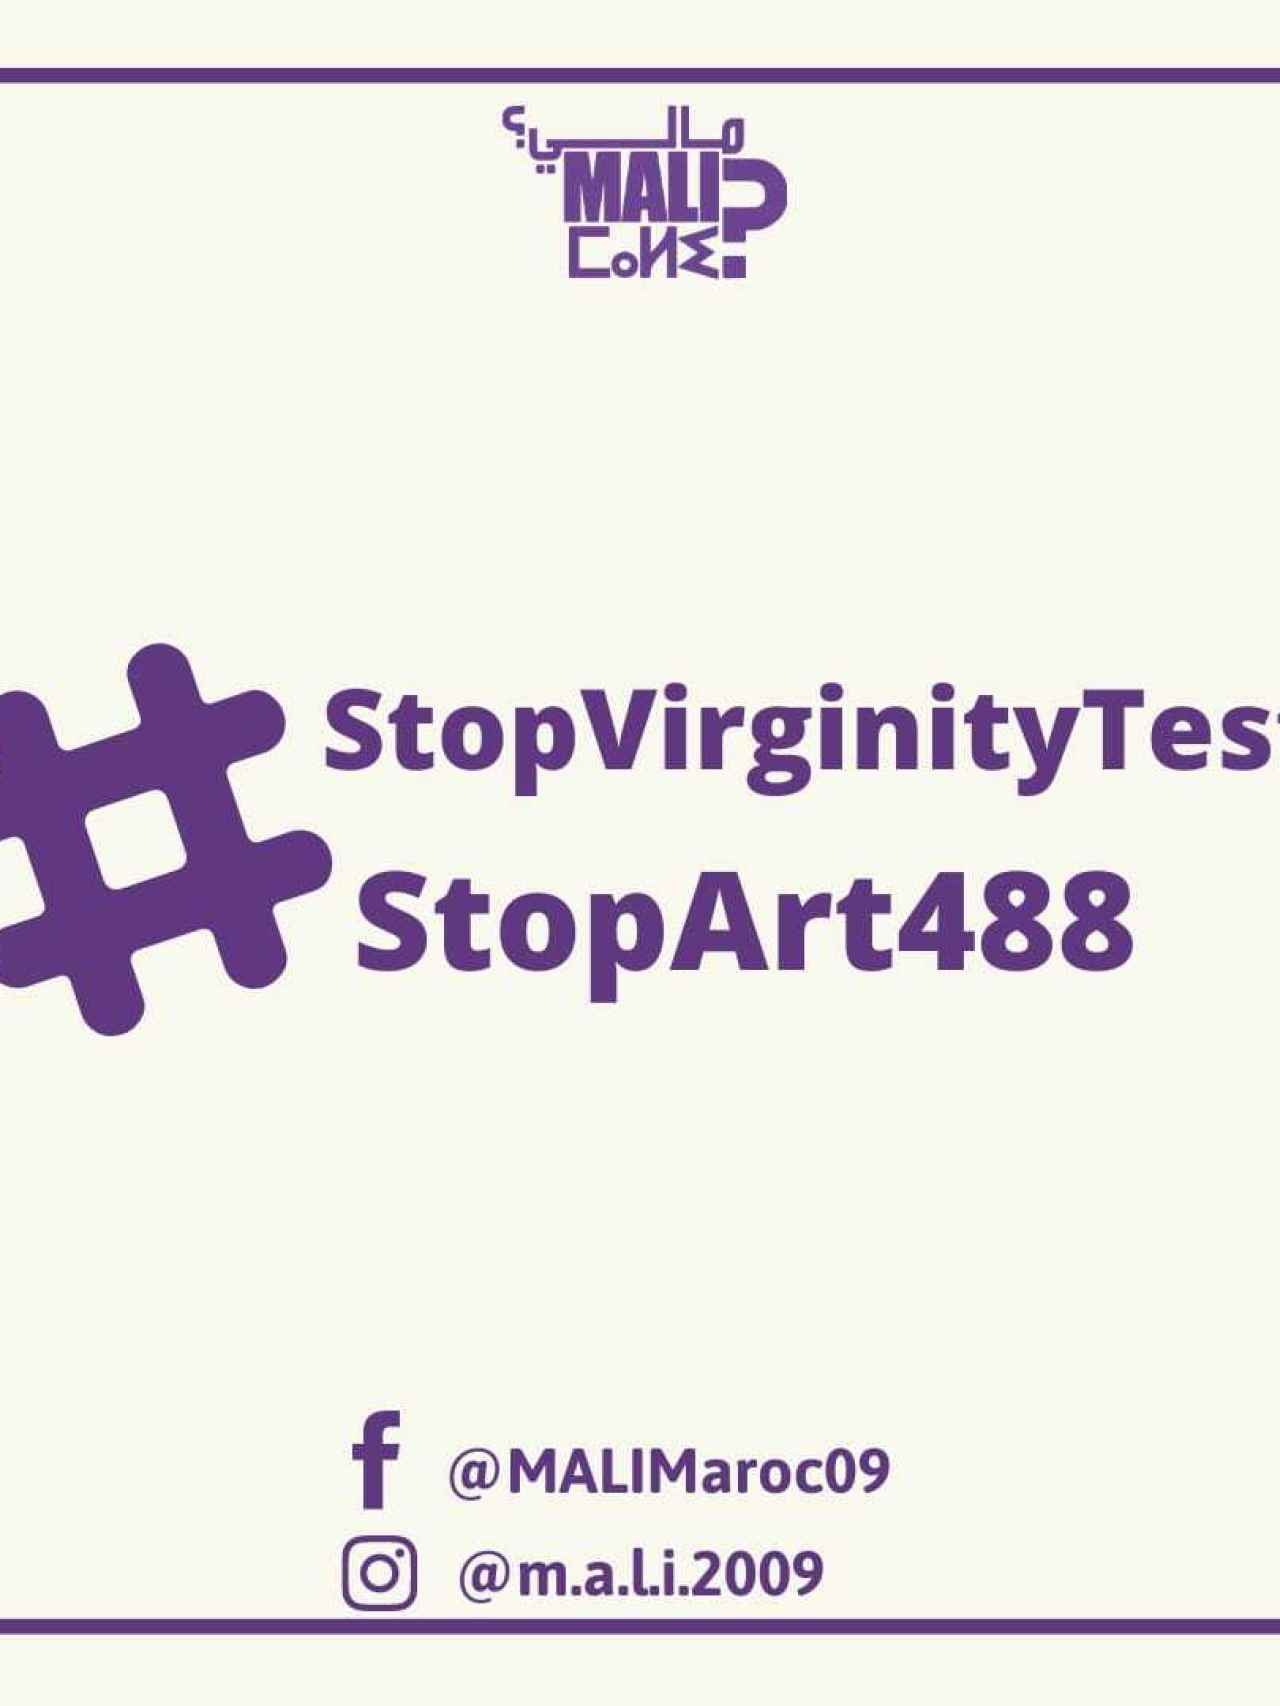 Cartel de la campaña contra los test de virginidad en Marruecos.